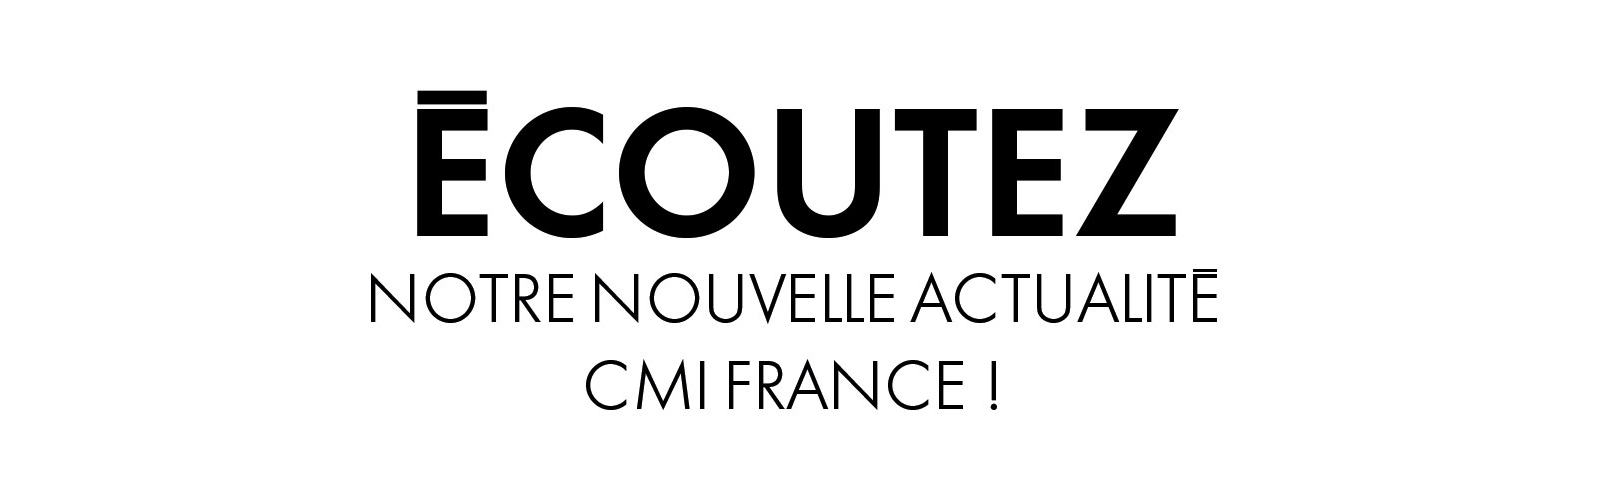 Ecoutez nouvelle actualité CMI France